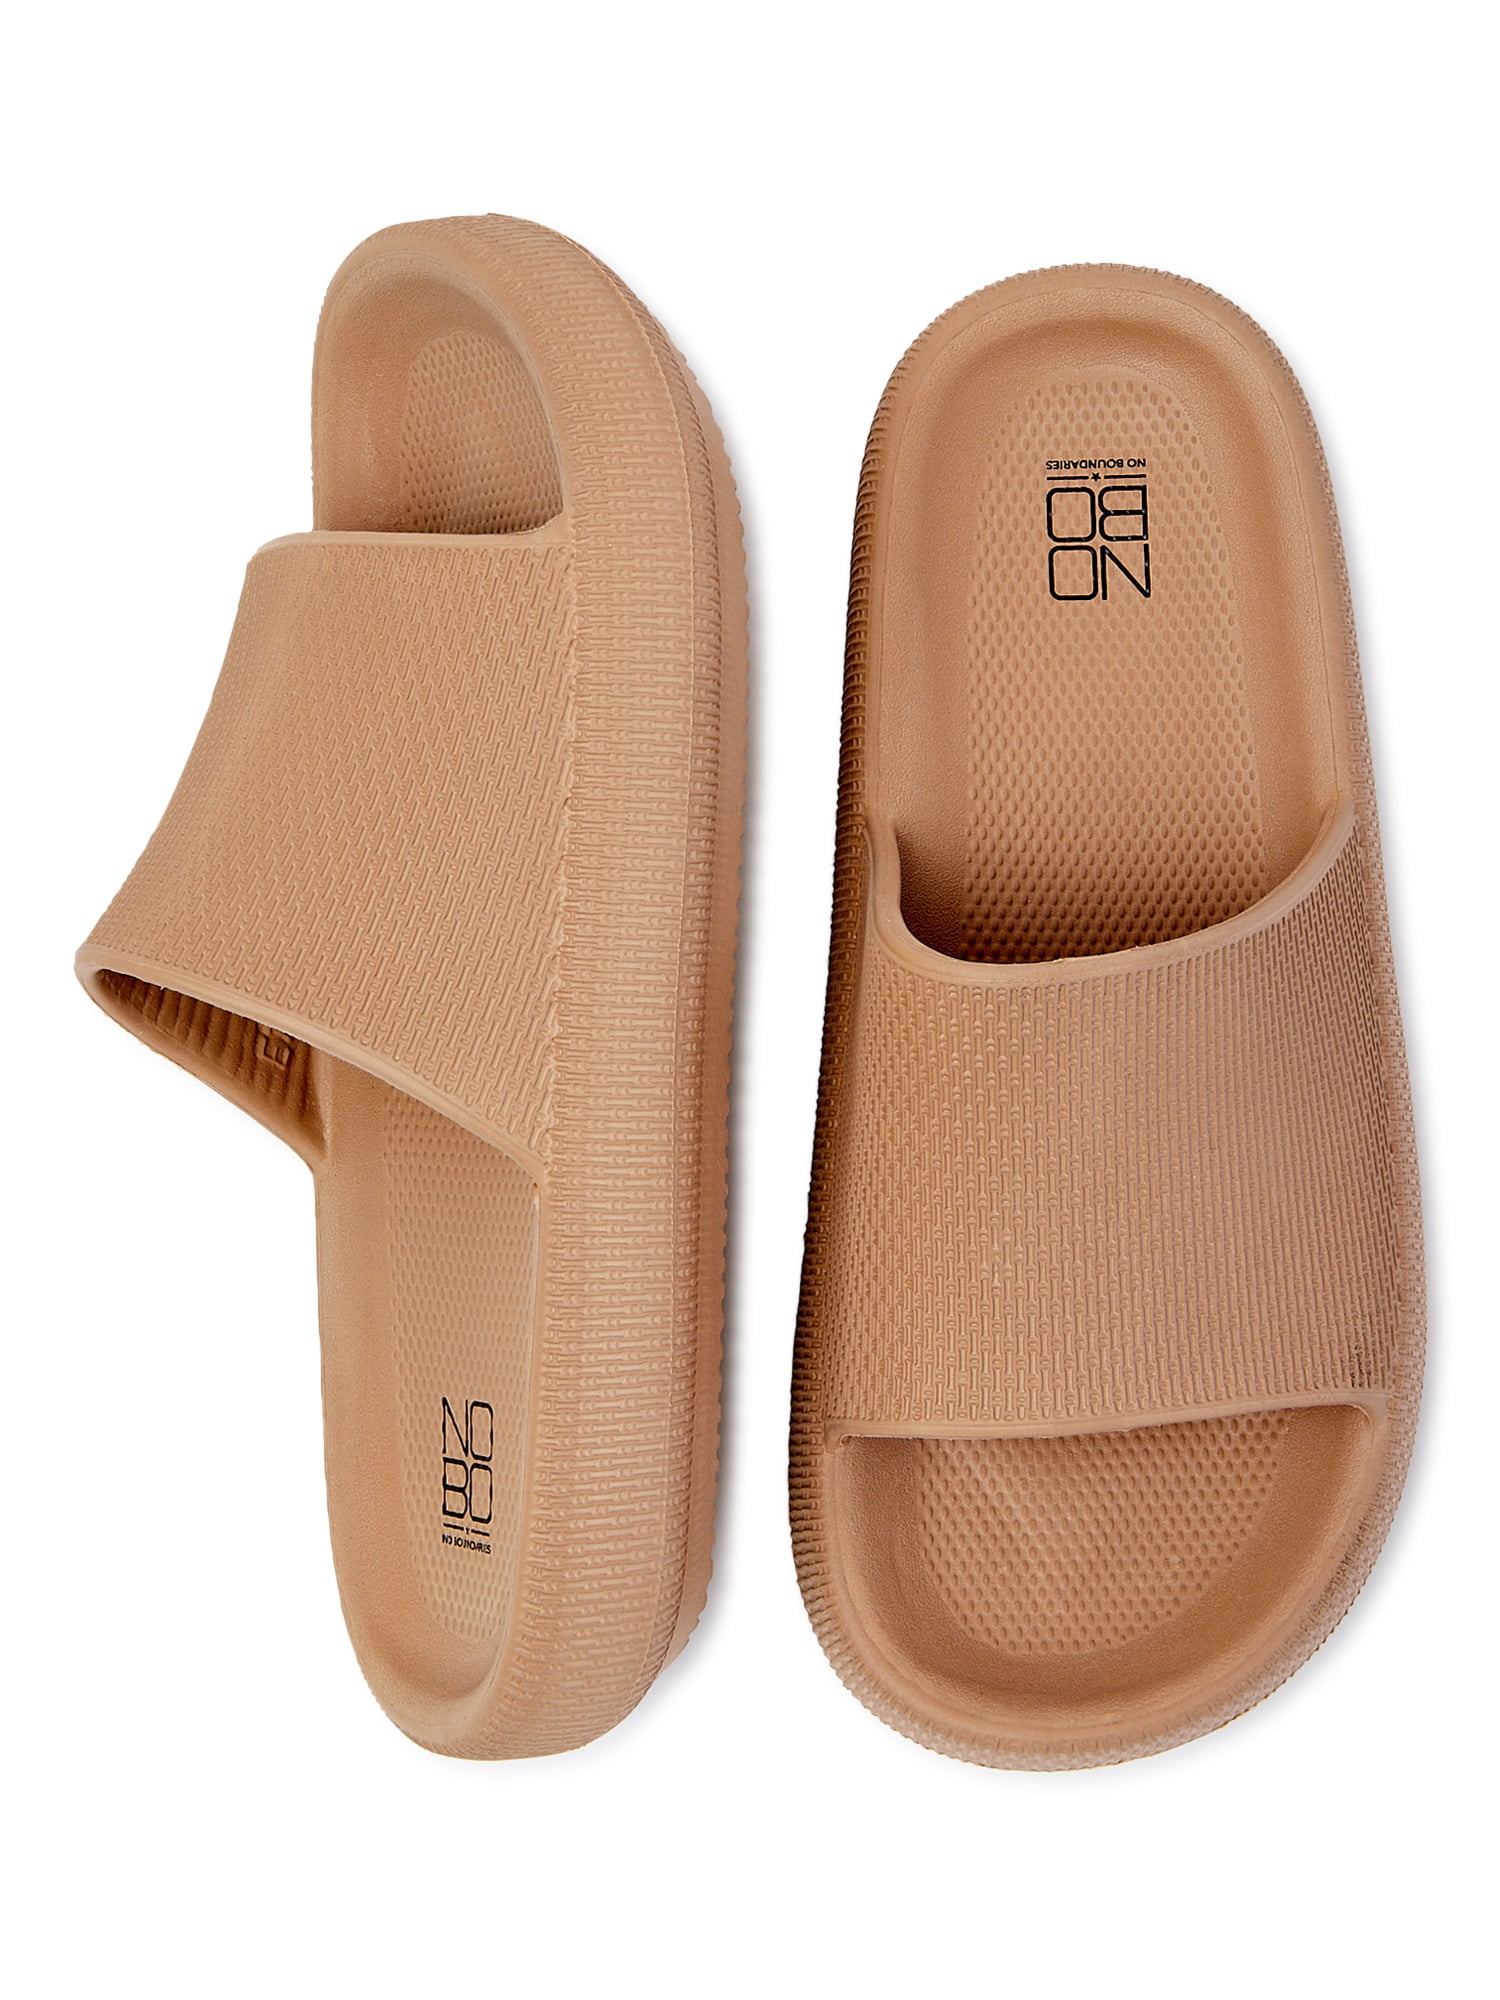 VONMAY Unisex Slides Sandals Soft Thick Sole NonSlip Pillow Sandals   Walmartcom